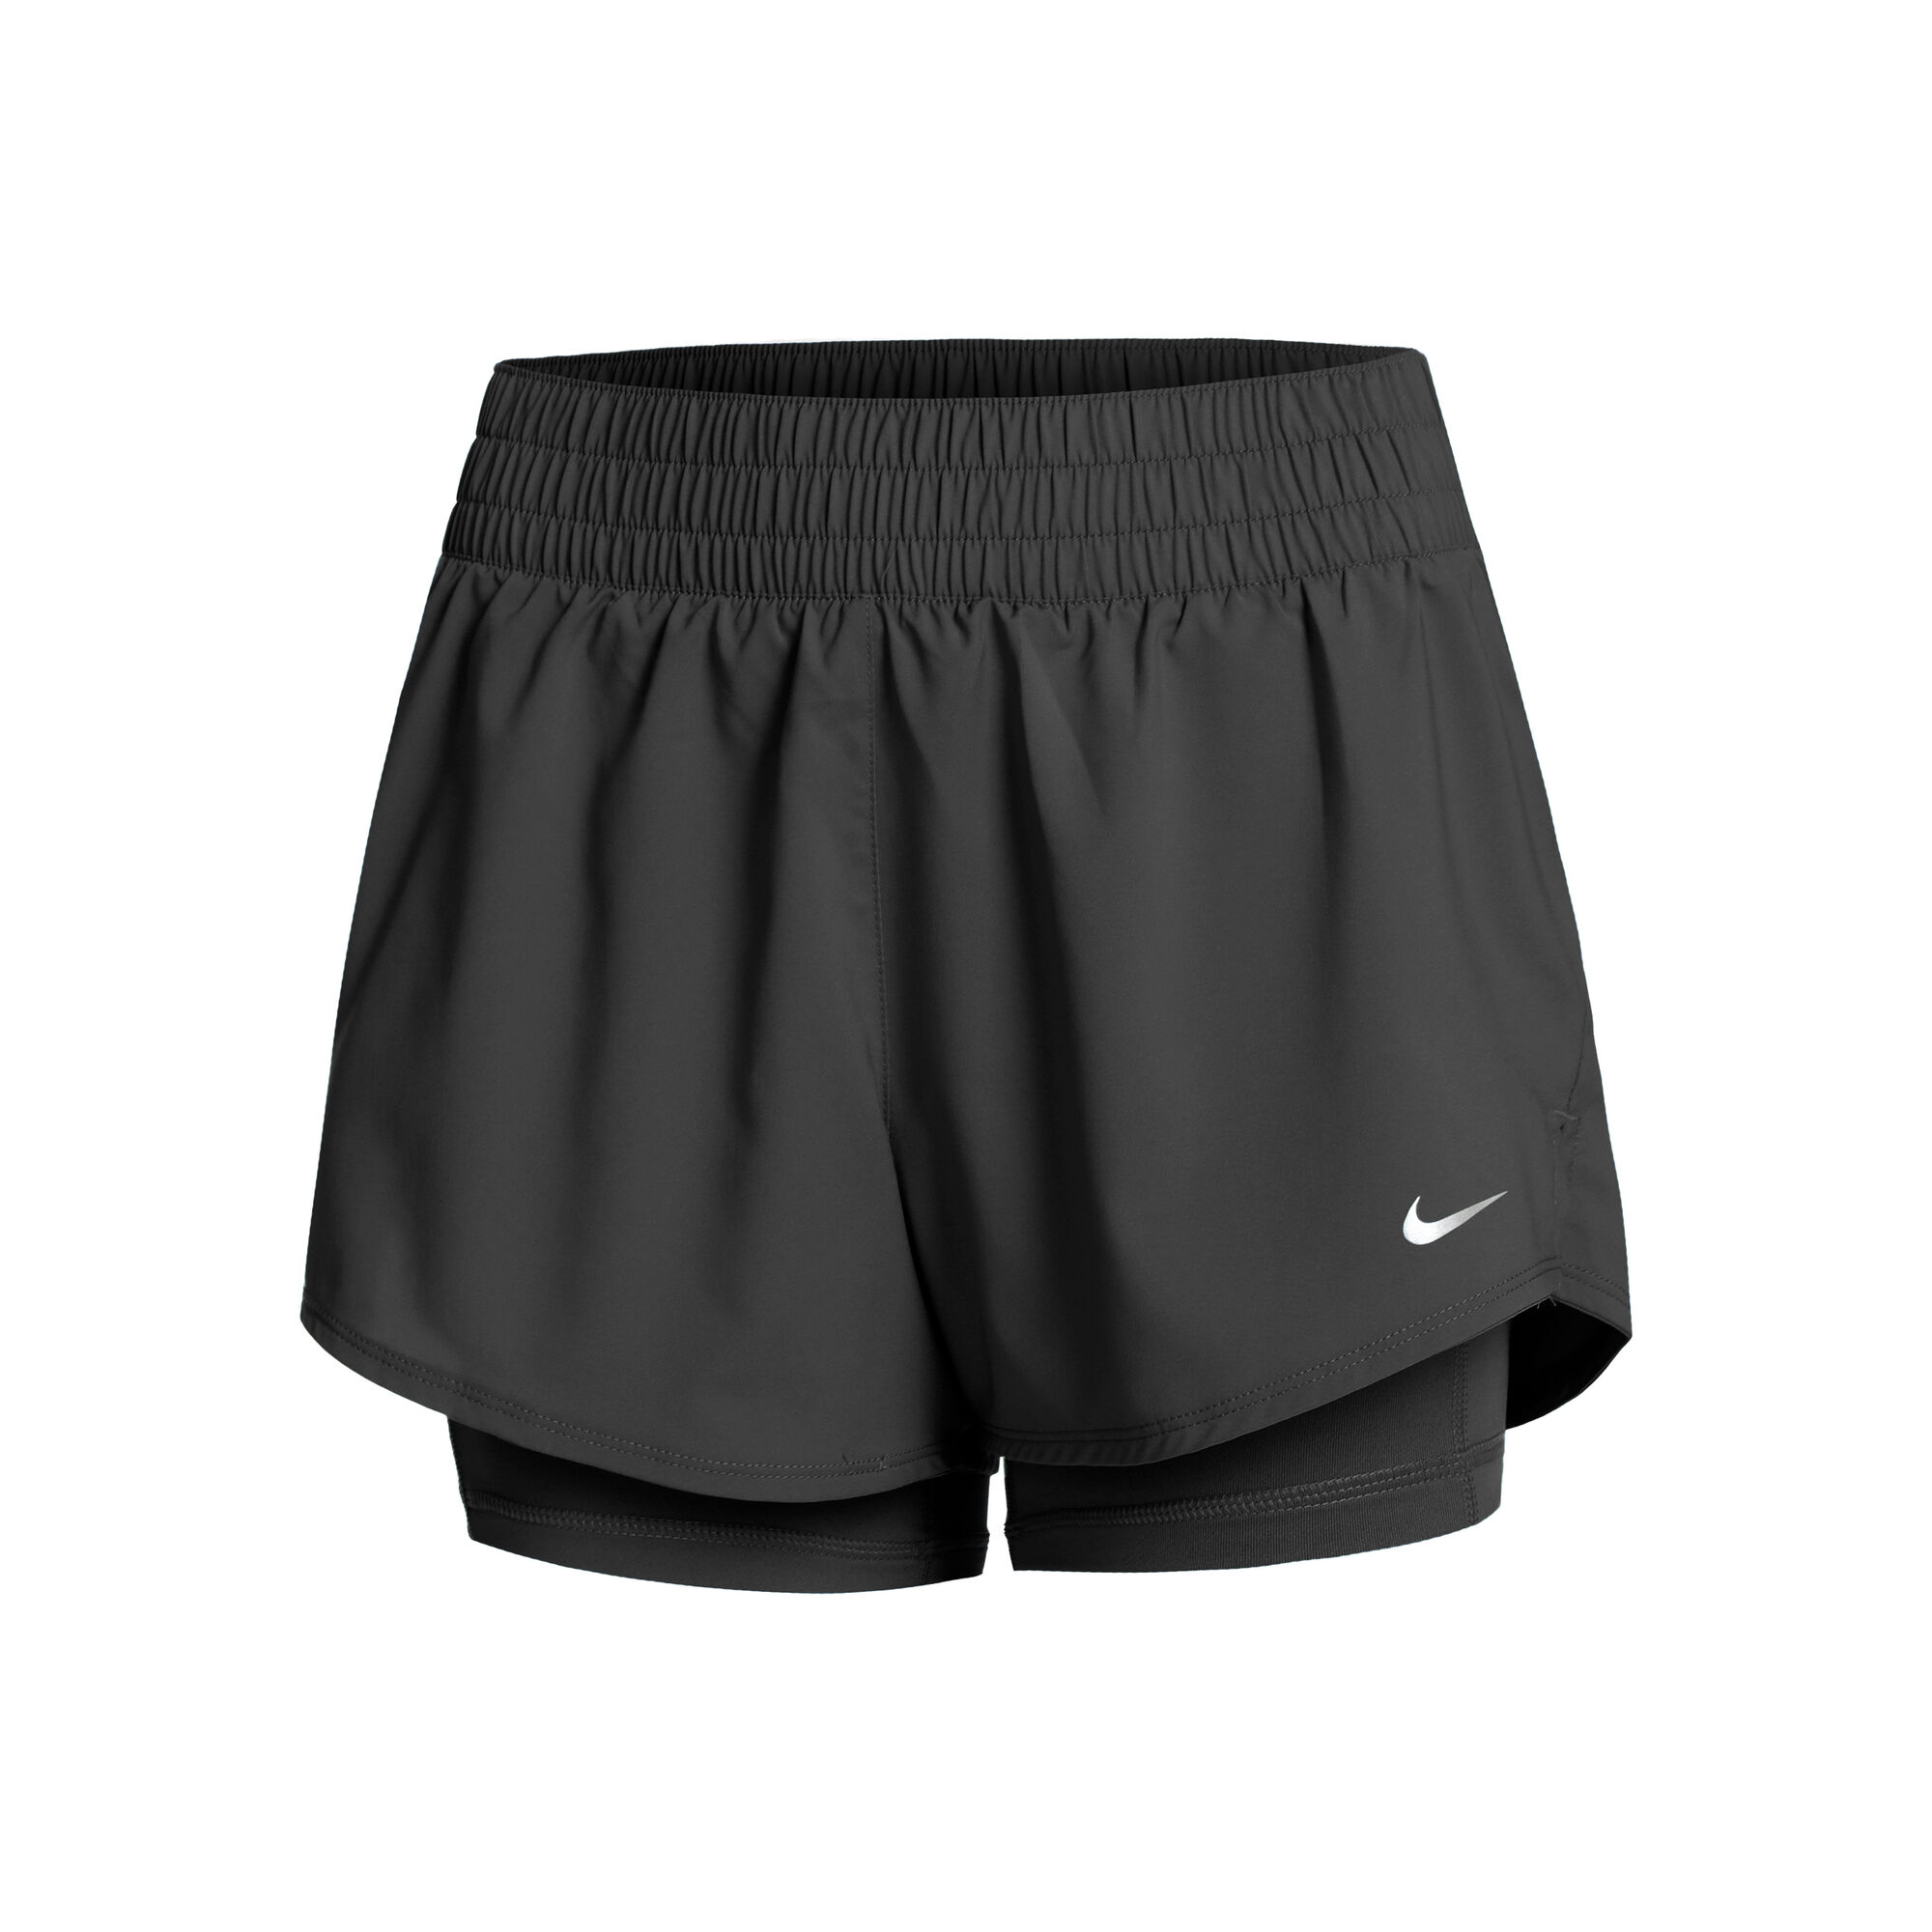 Buy Nike Dri-Fit One MR 2in1 Shorts Women Black online